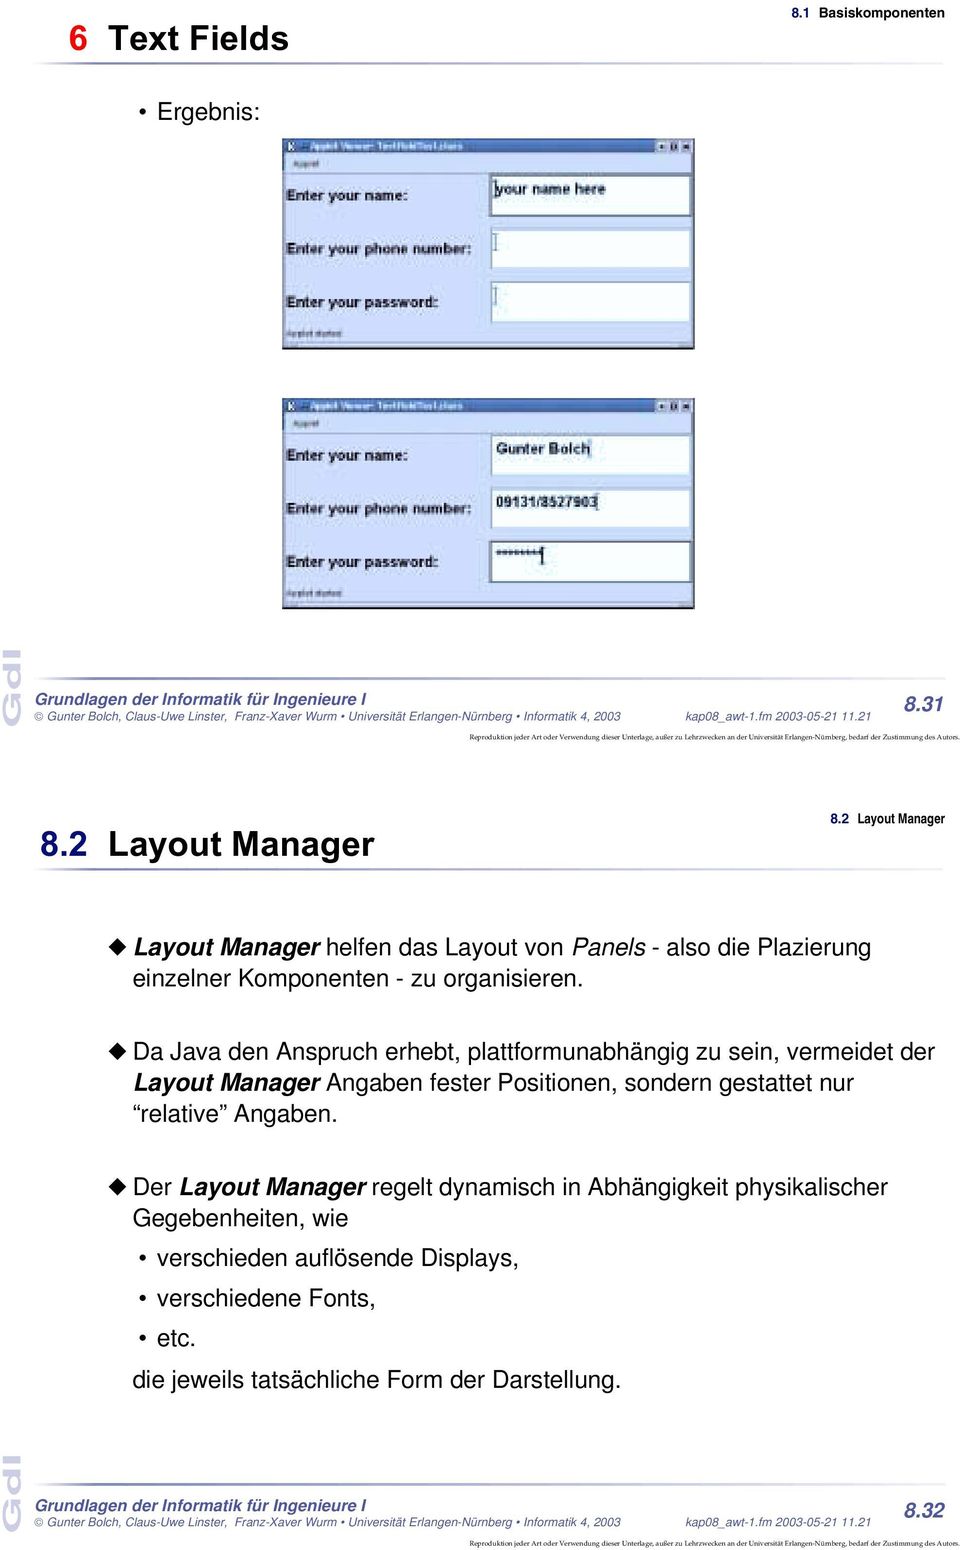 Da Java den Anspruch erhebt, plattformunabhängig zu sein, vermeidet der Layout Manager Angaben fester Positionen, sondern